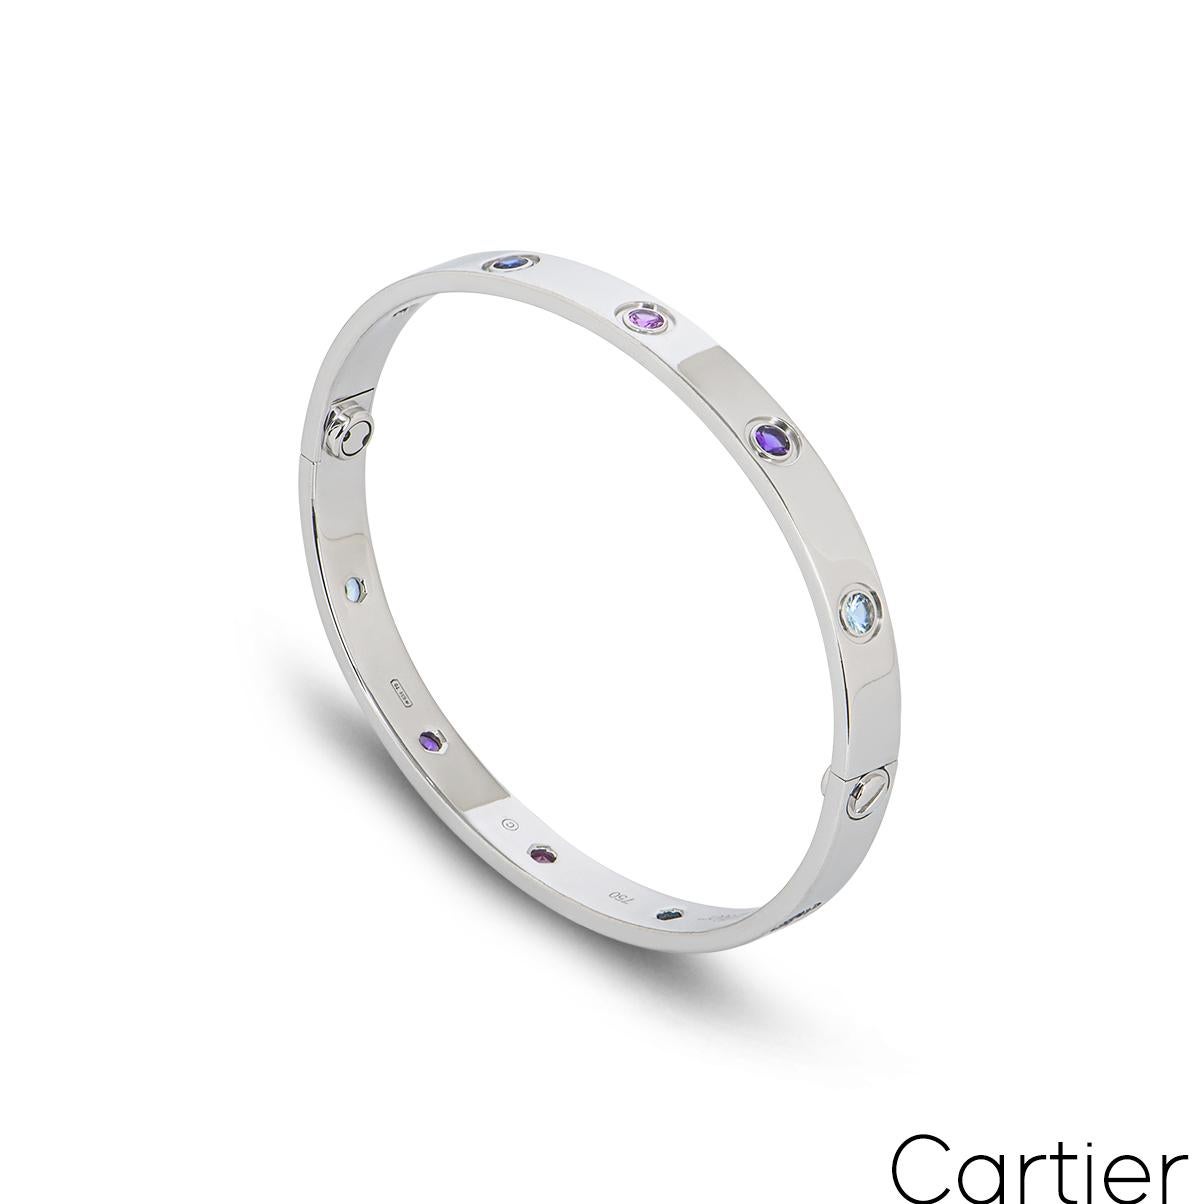 Un bracelet Cartier en or blanc 18 carats avec des pierres de couleur de la collection Love. Le bracelet est serti de 10 pierres de couleur au centre, dont le spinelle violet, les saphirs bleu et rose, l'améthyste et l'aigue-marine. Le bracelet,